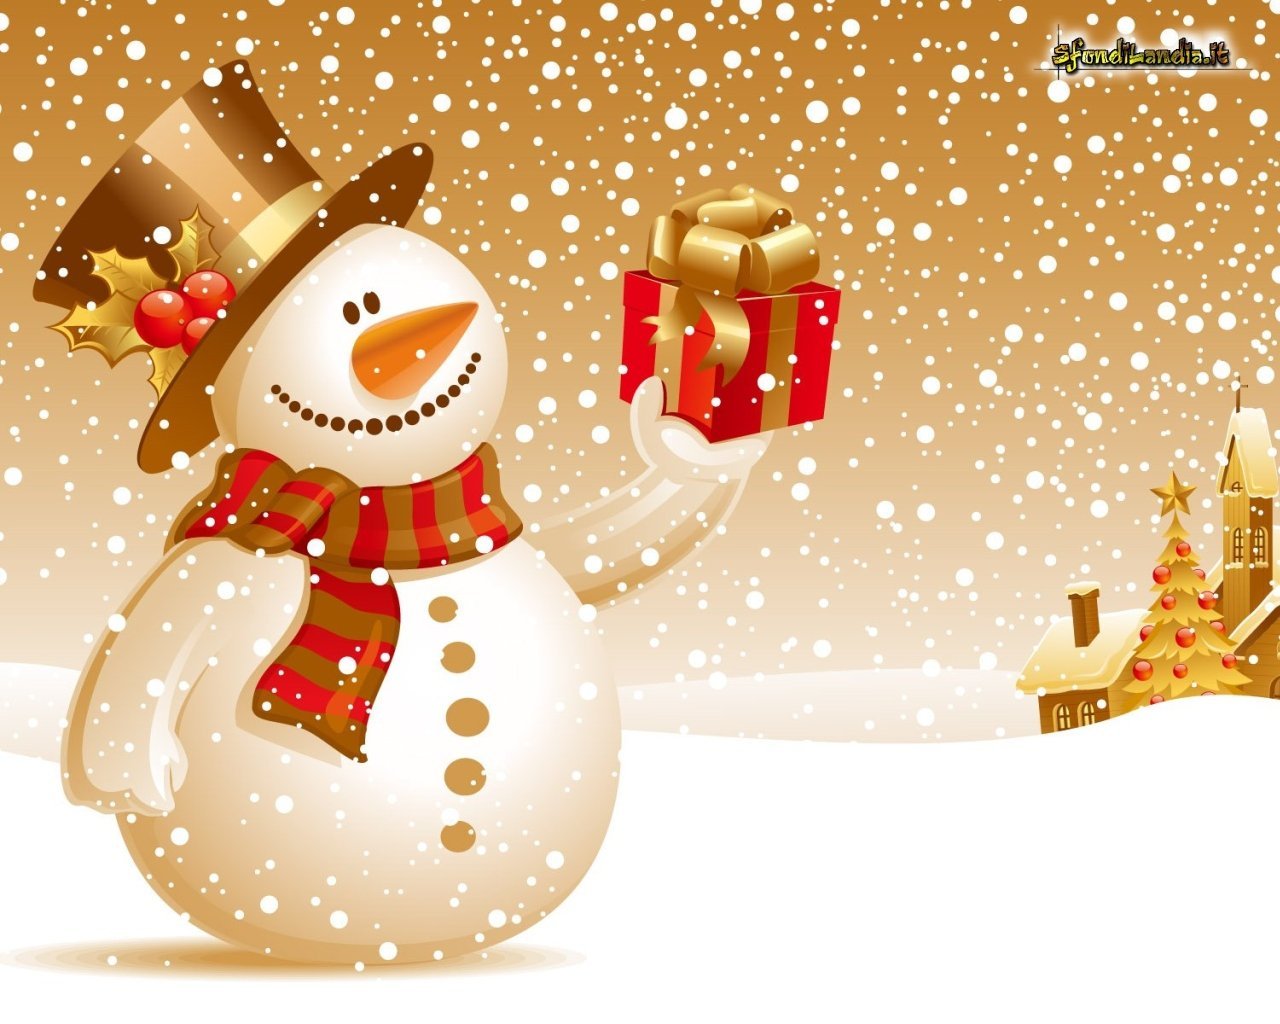 Sfondi Animati Gratis Di Natale.Sfondilandia It Sfondo Gratis Di Pupazzo Di Natale Per Desktop Smartphone Android E Iphone In Risoluzione 1280x1024